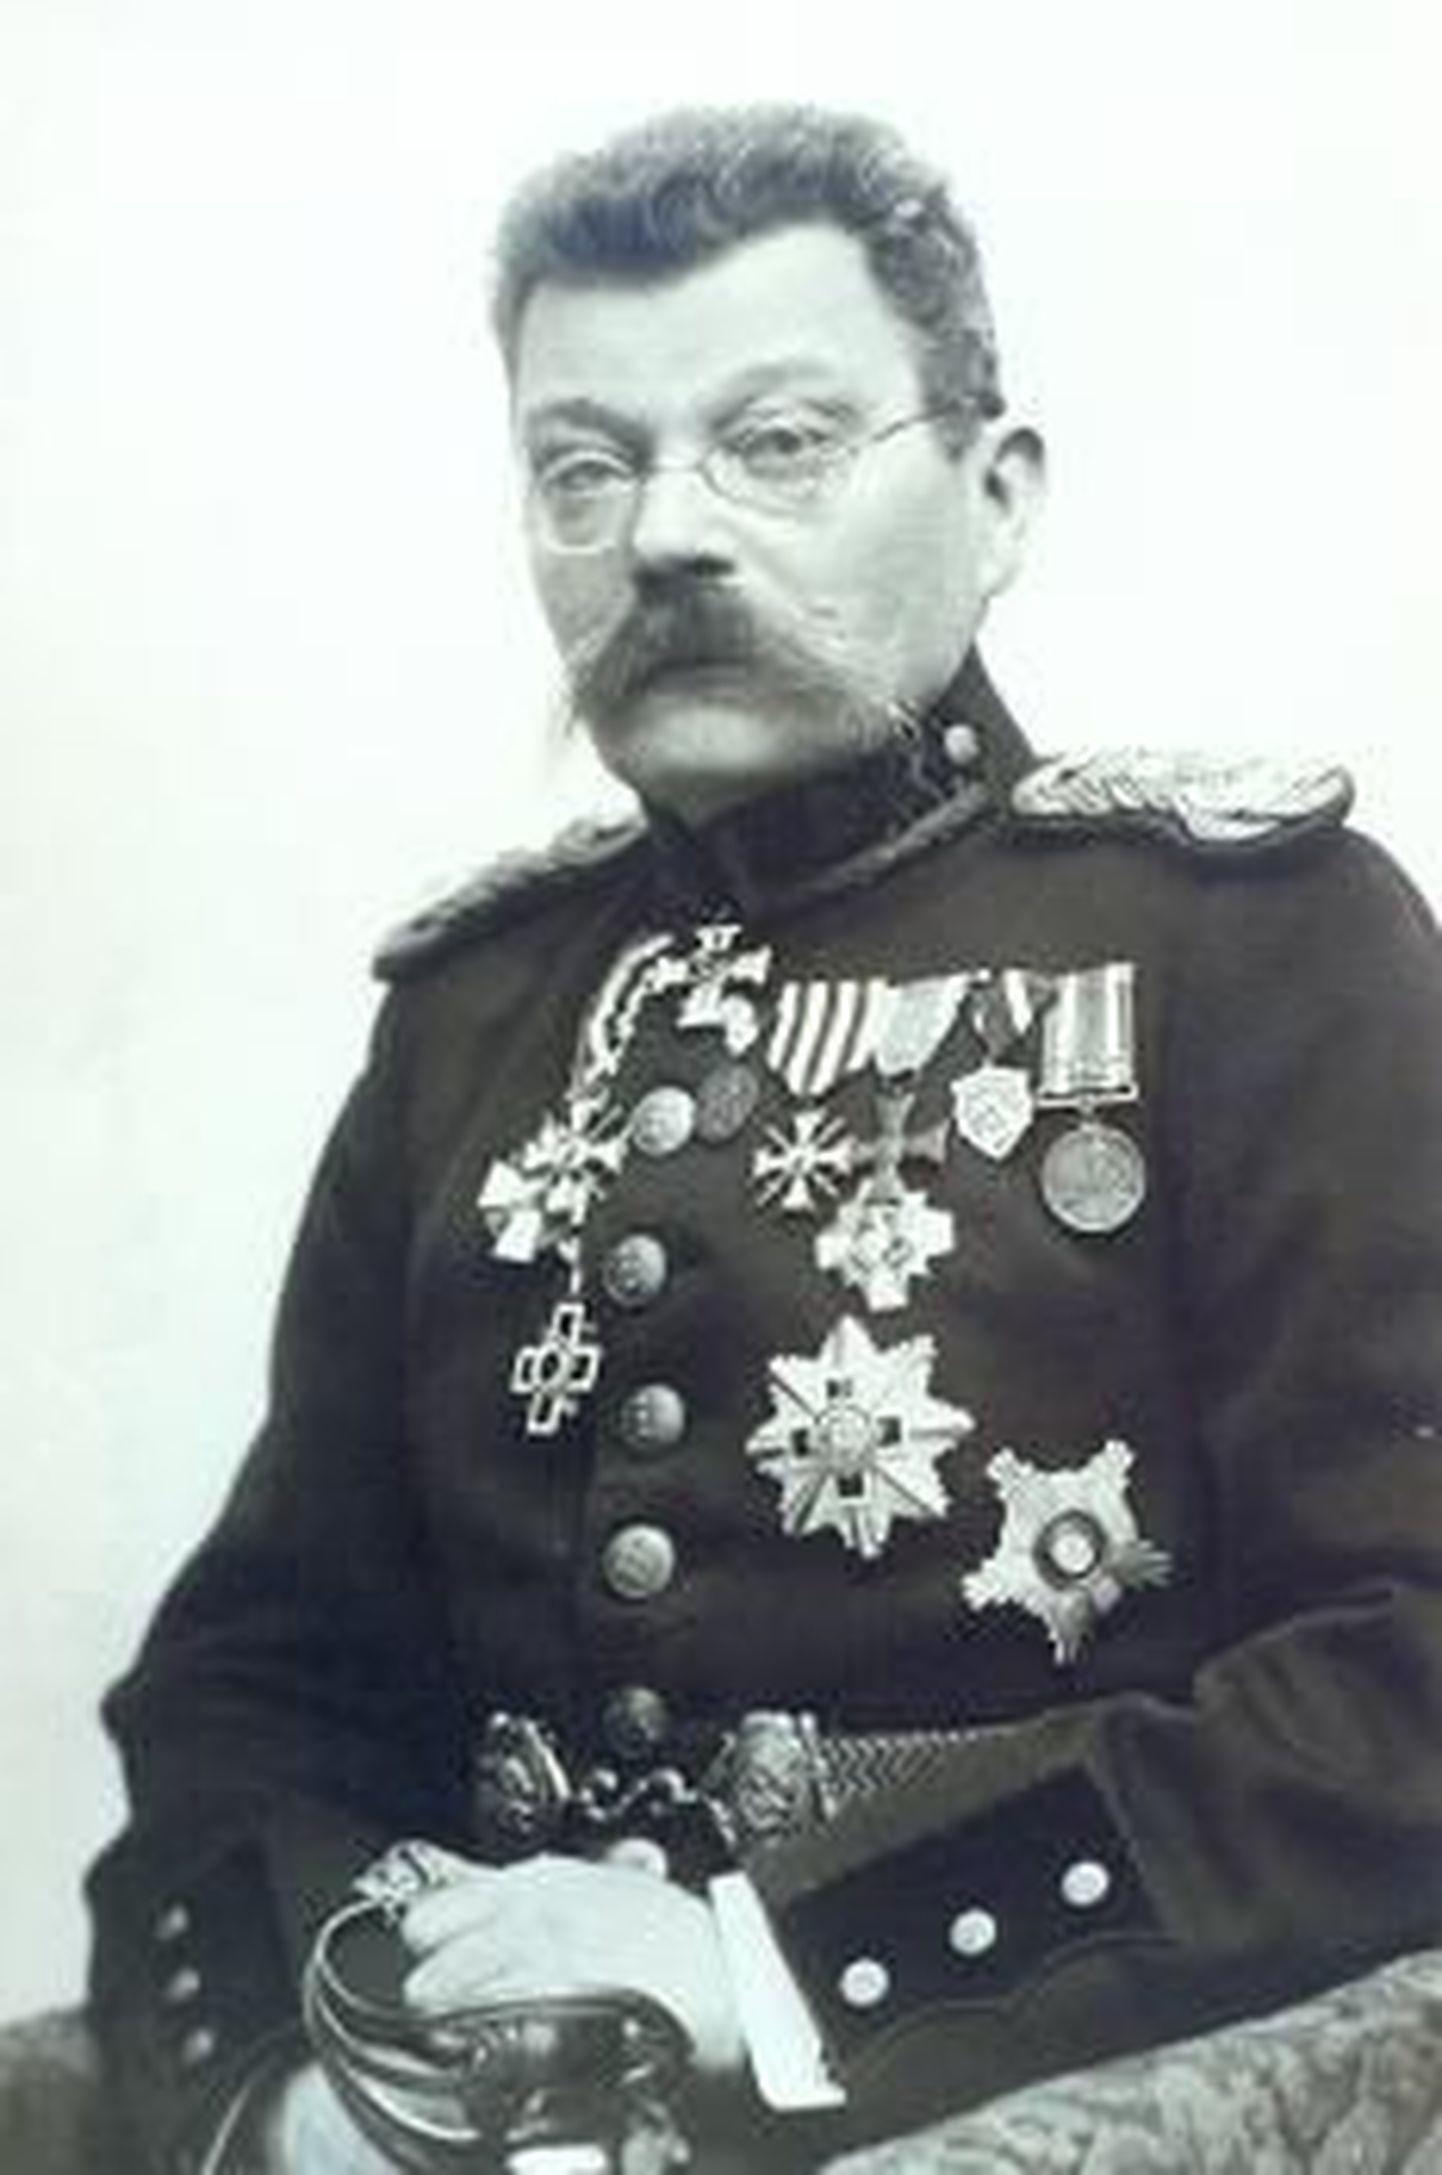 Kindralmajor Ernst Põdder